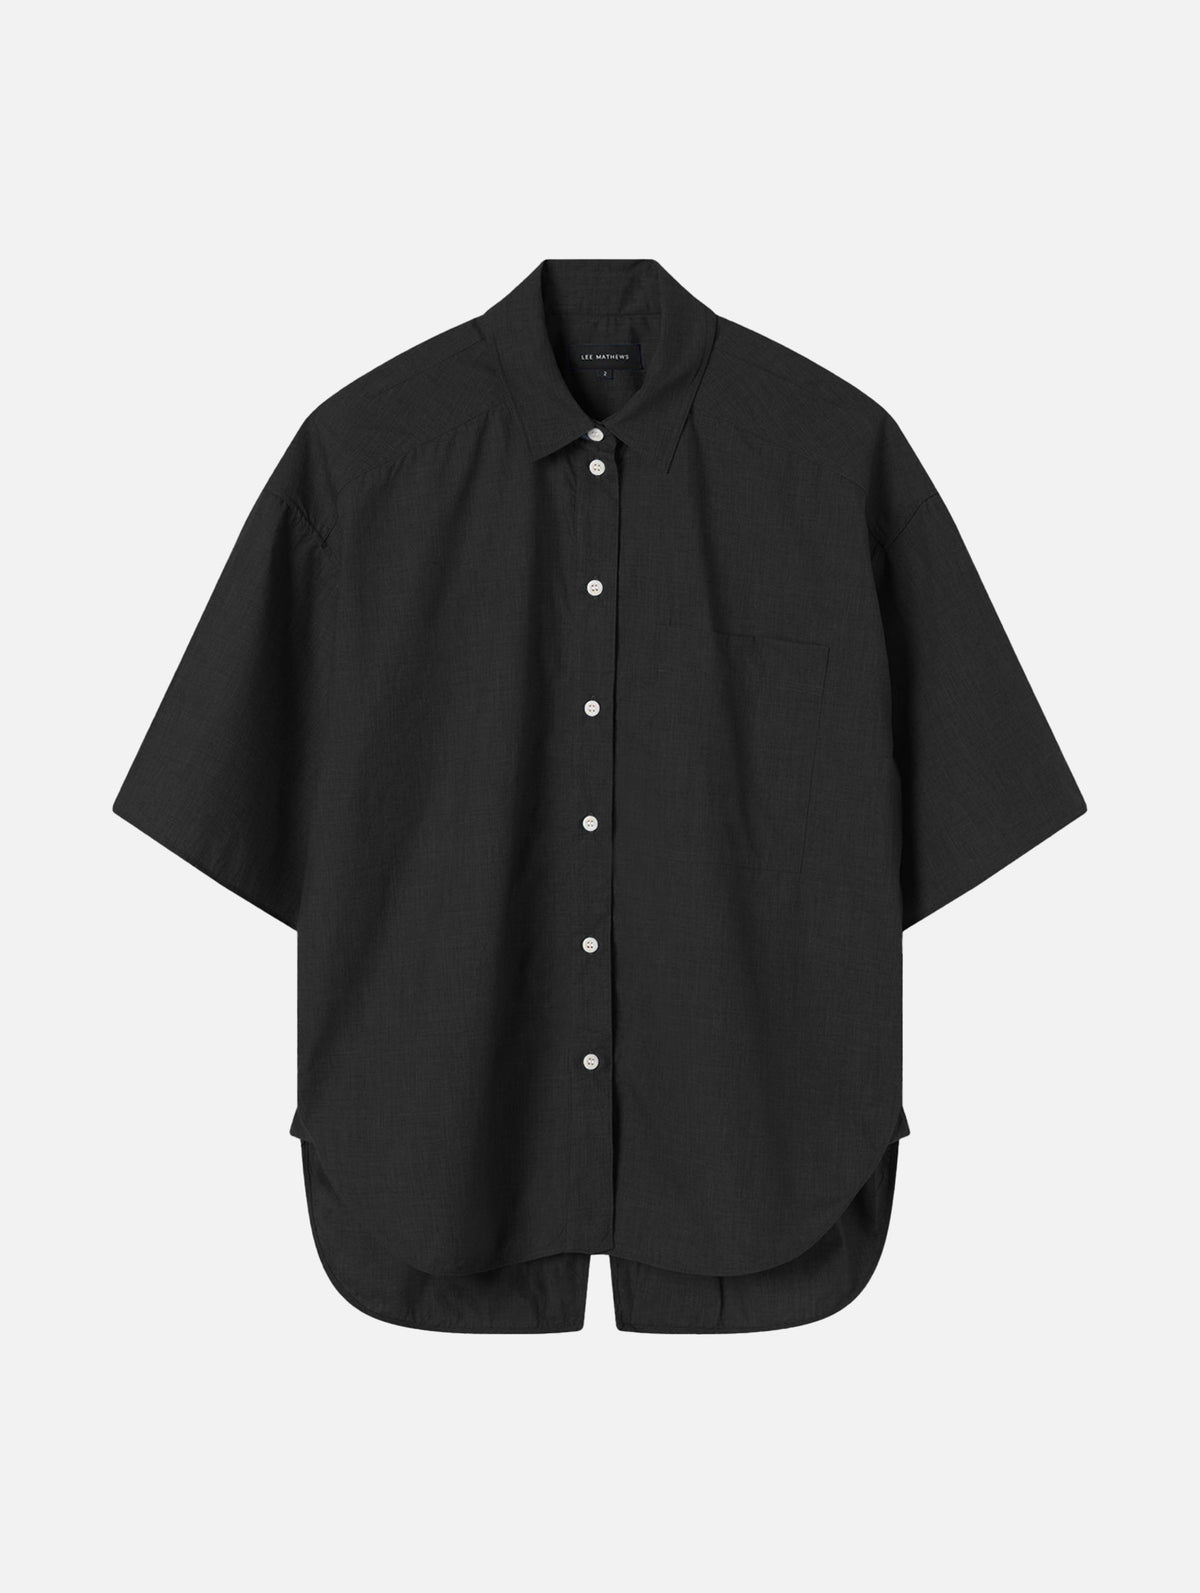 Weber Short Sleeve Shirt in Black